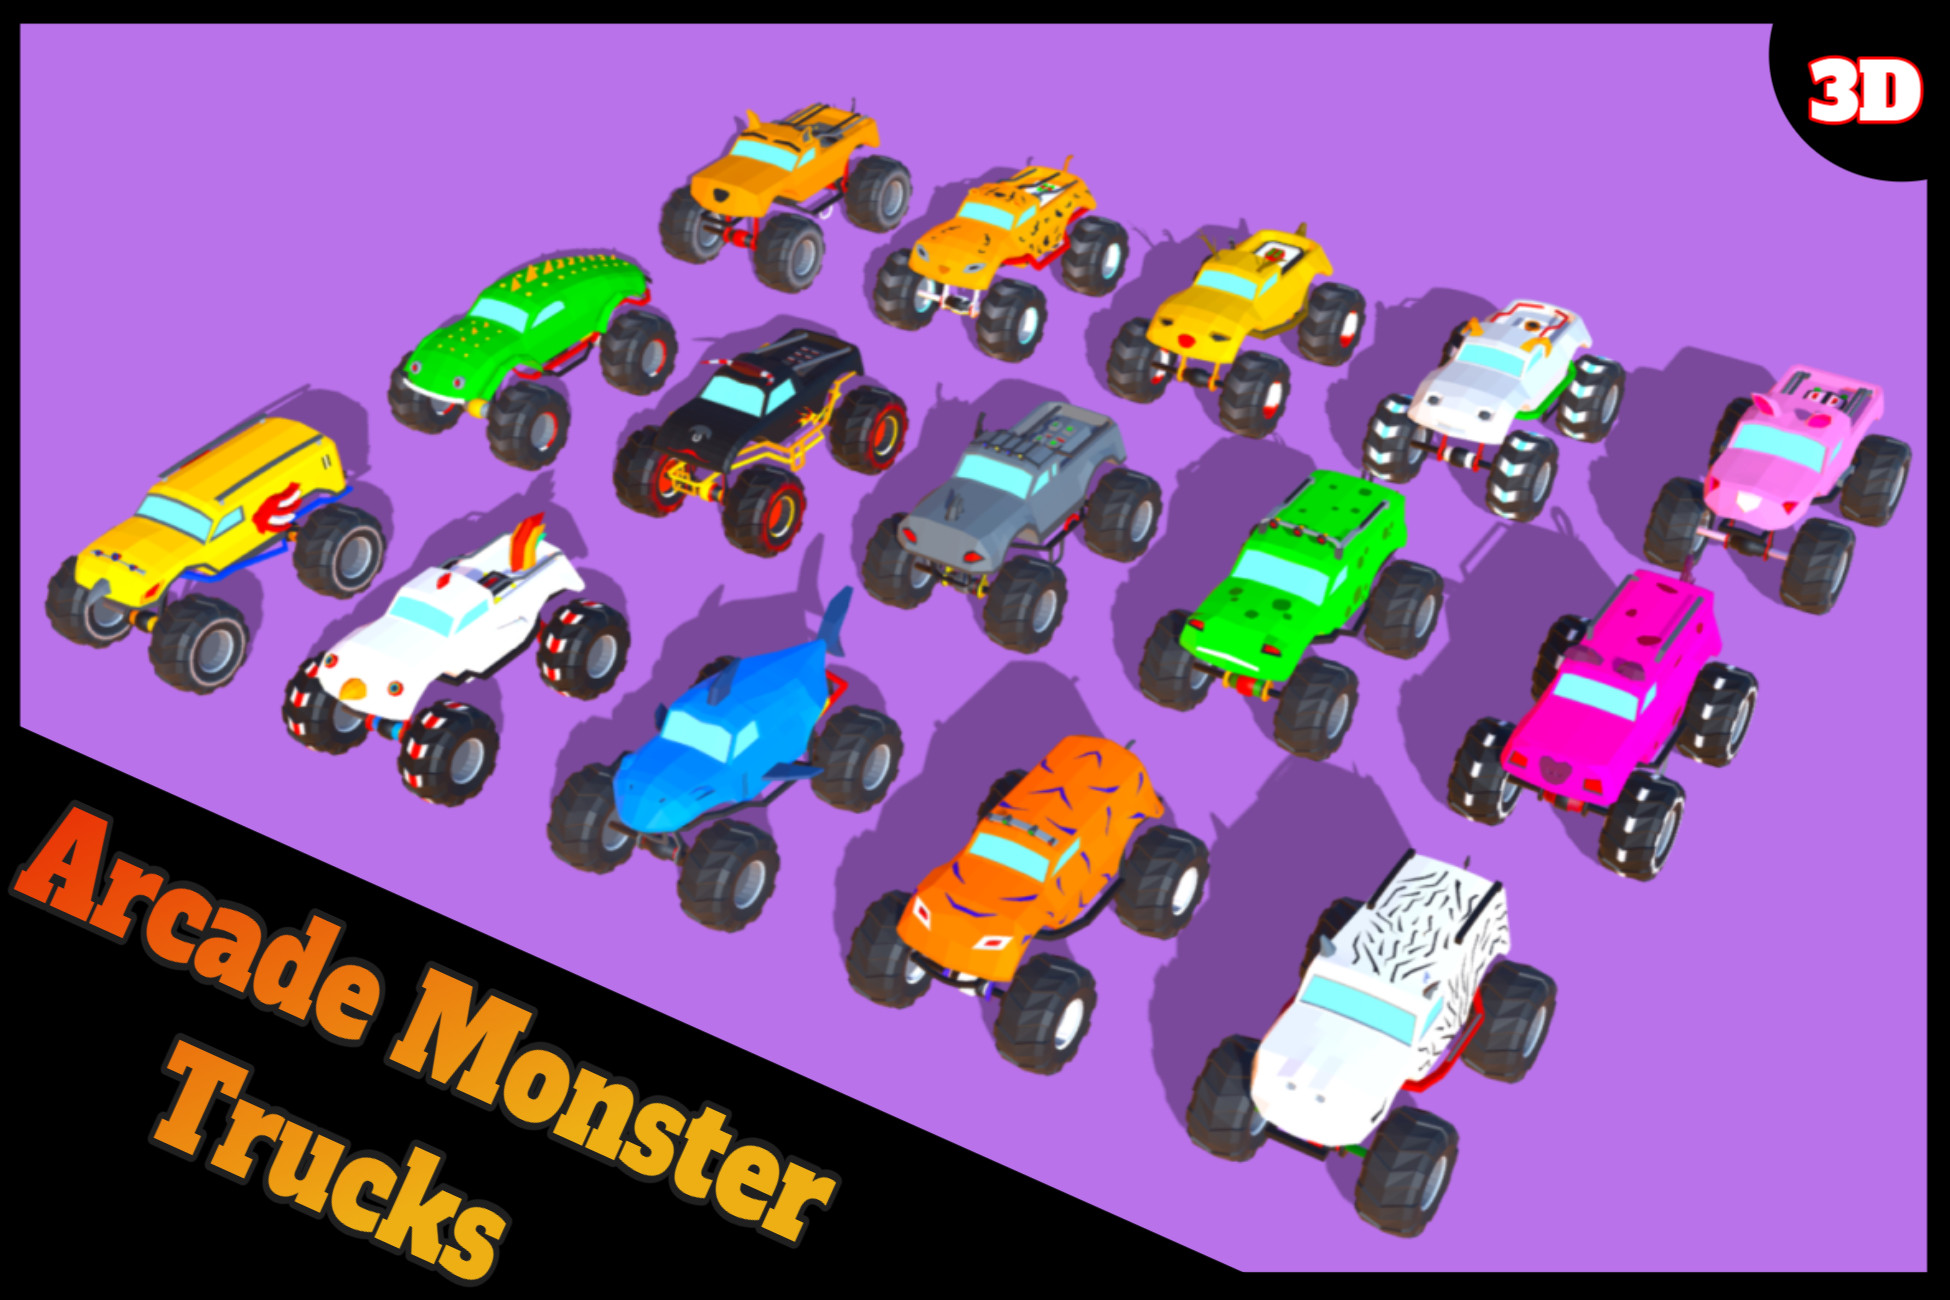 Arcade Monster Trucks